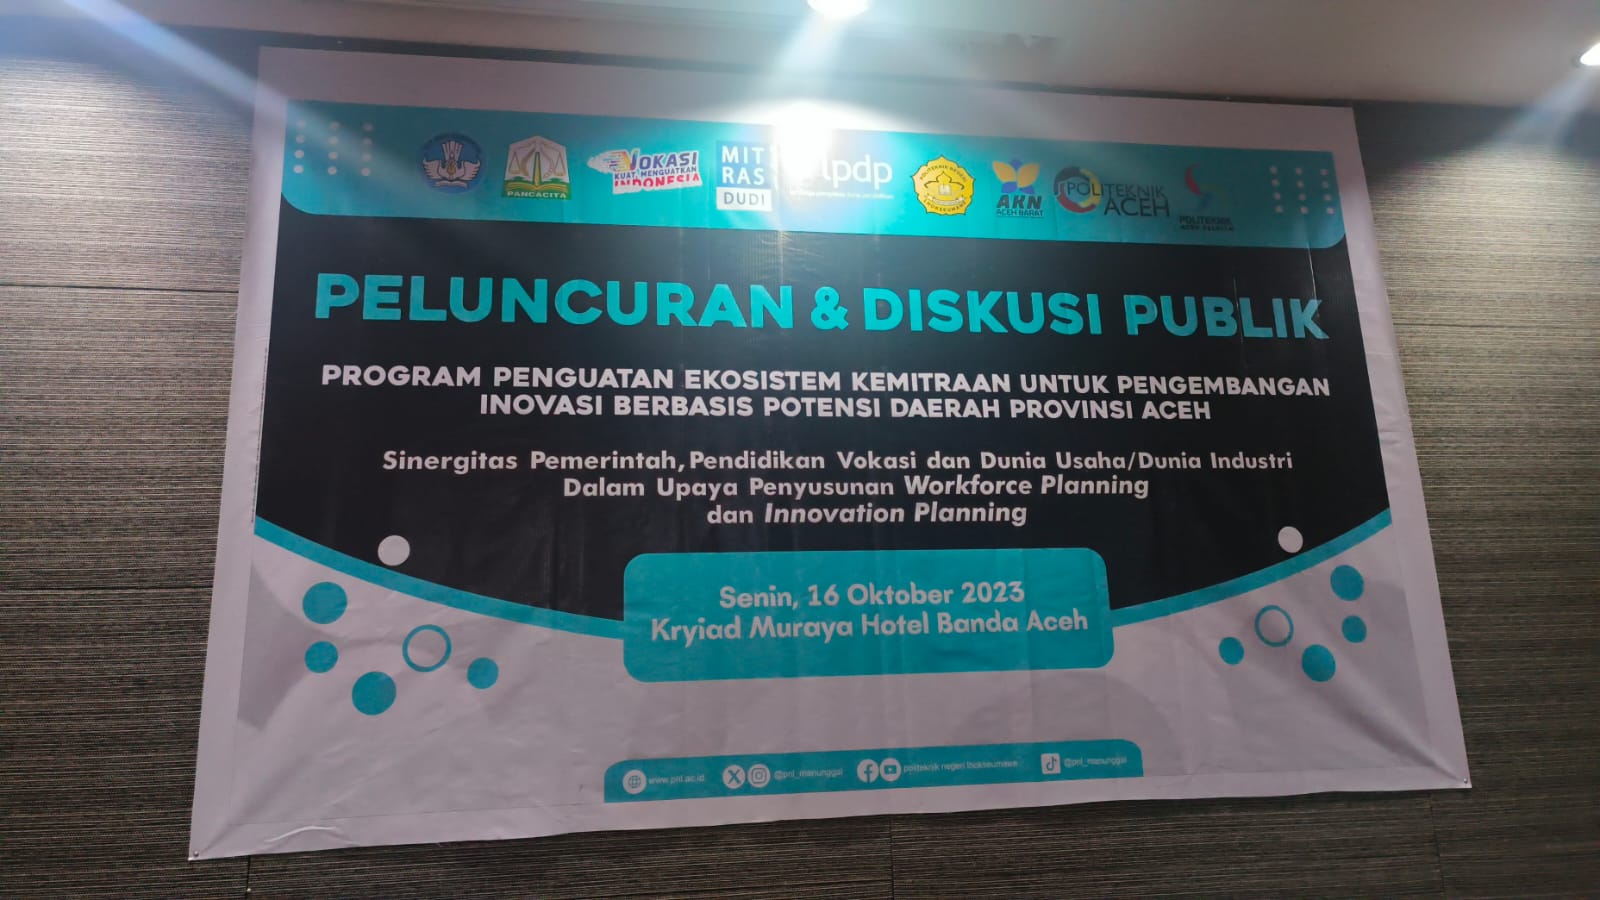 PTV Bakal Luncurkan Program Penguatan Ekosistem Kemitraan untuk Pengembangan Inovasi Berbasis Potensi Daerah di Aceh